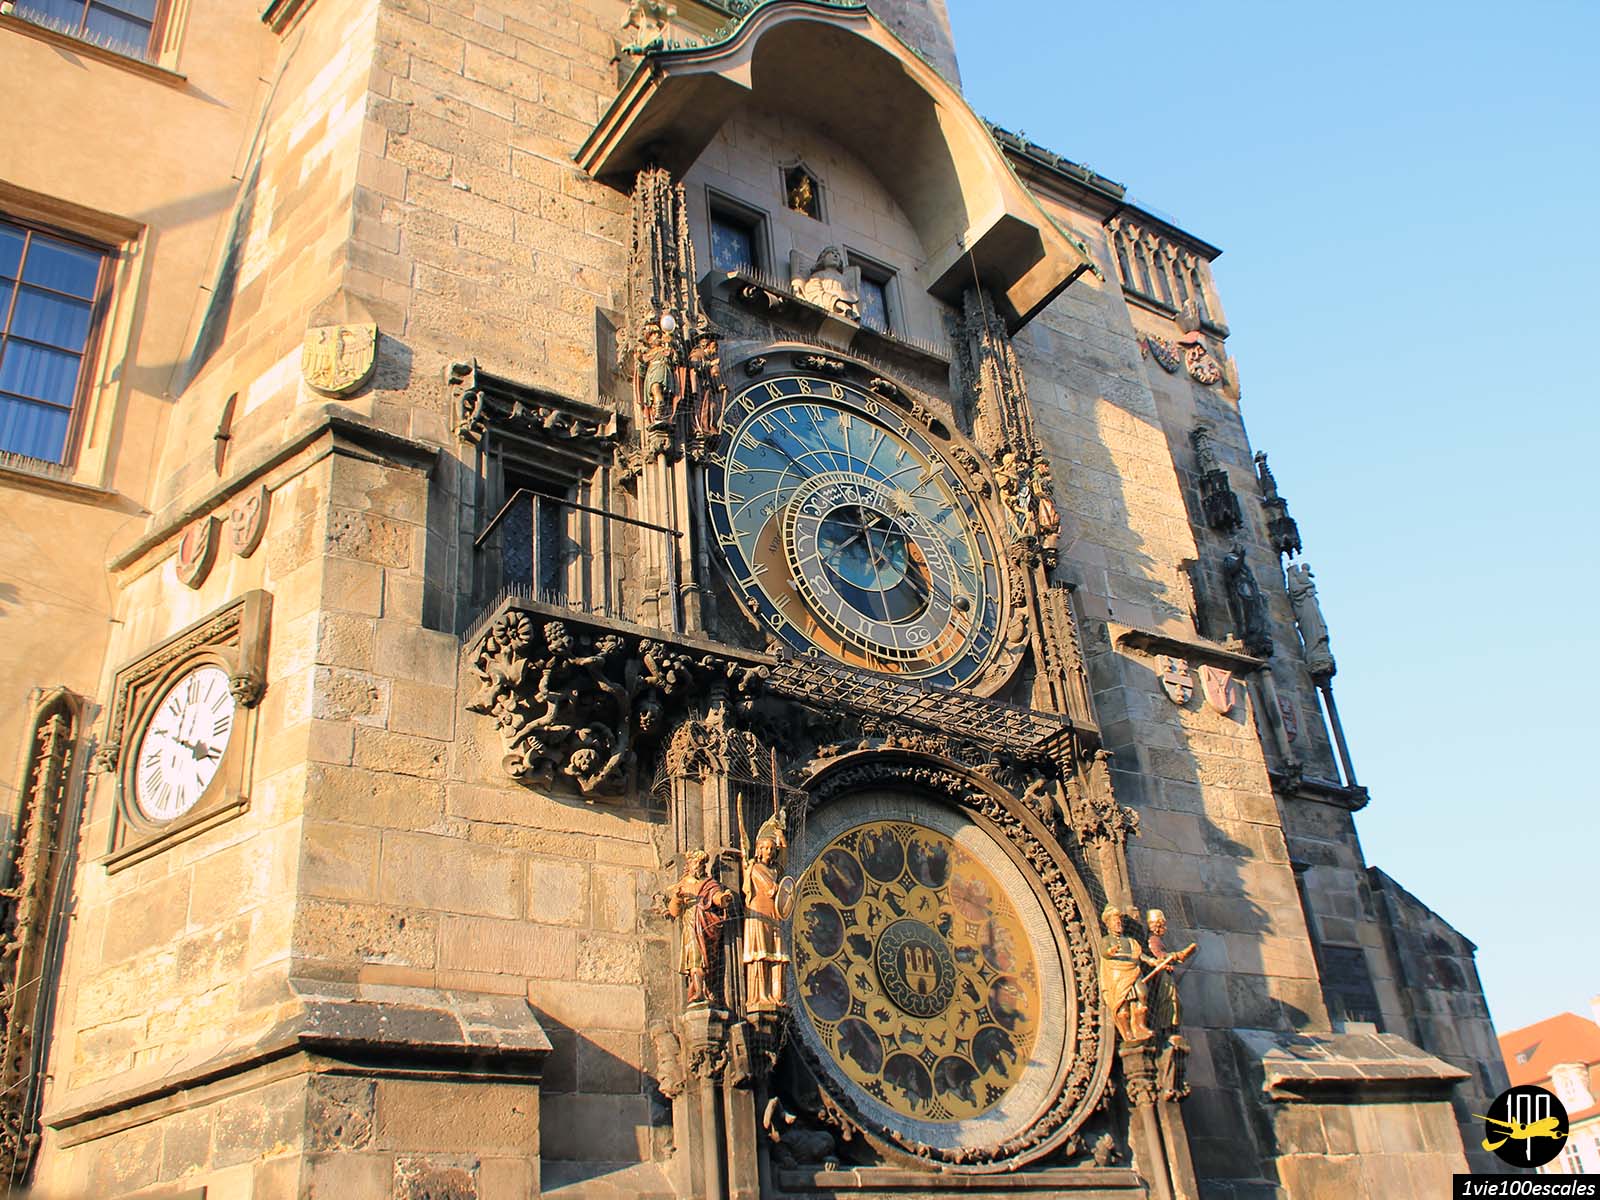 L'horloge astronomique de Prague, construite au XVème siècle, est une horloge médiévale de caractère exceptionnel